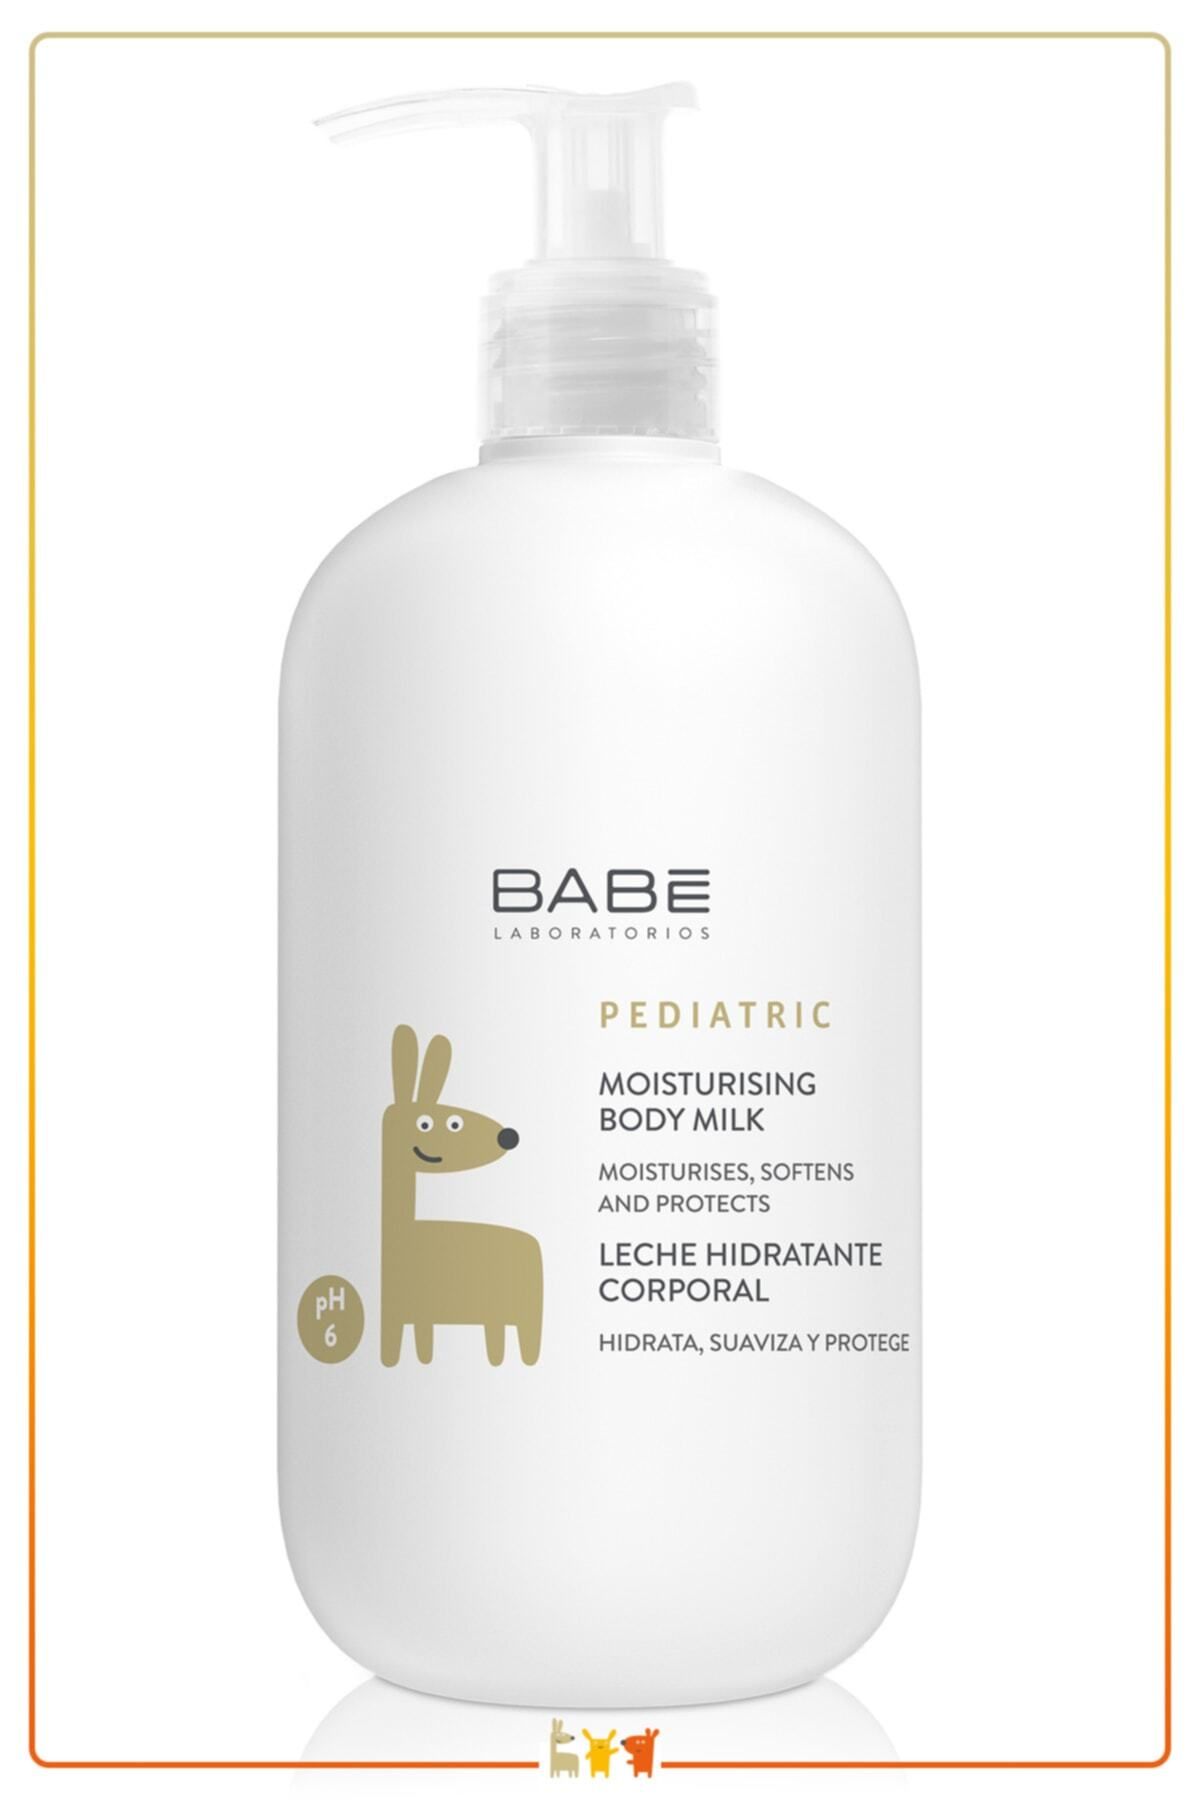 Babe Laboratorios Babe Pediatric Bebek Ve Çocuk Için Nemlendirici Vücut Losyonu 100 ml